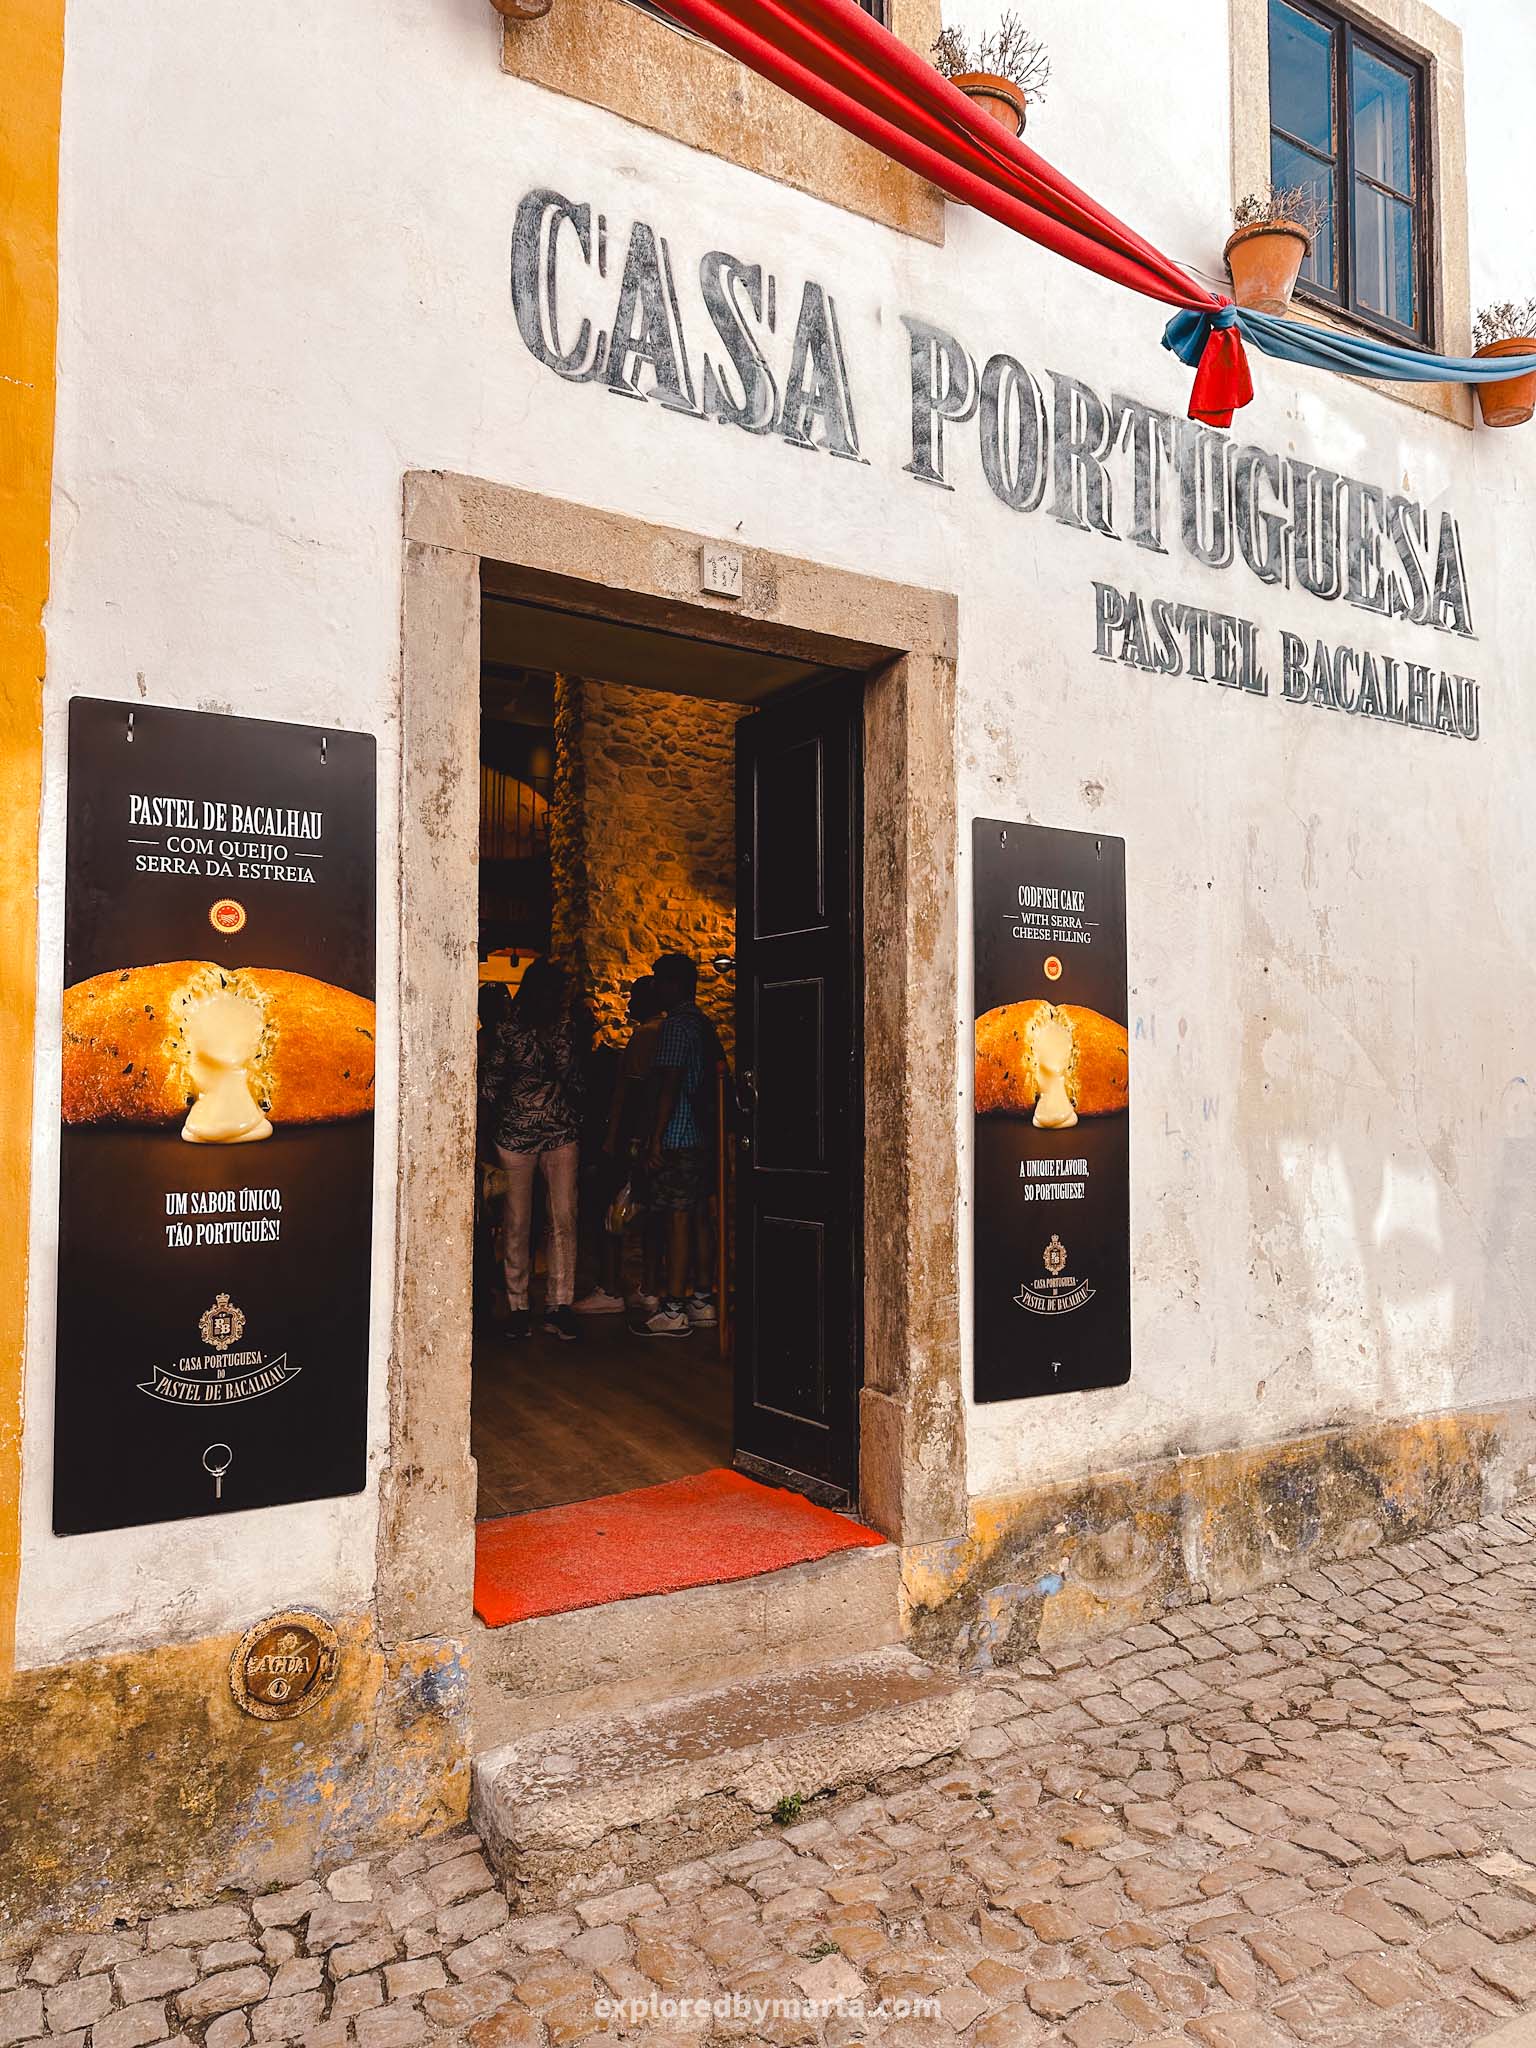 Óbidos, Portugal things to do-Casa Portuguesa do Pastel de Bacalhau - Óbidos